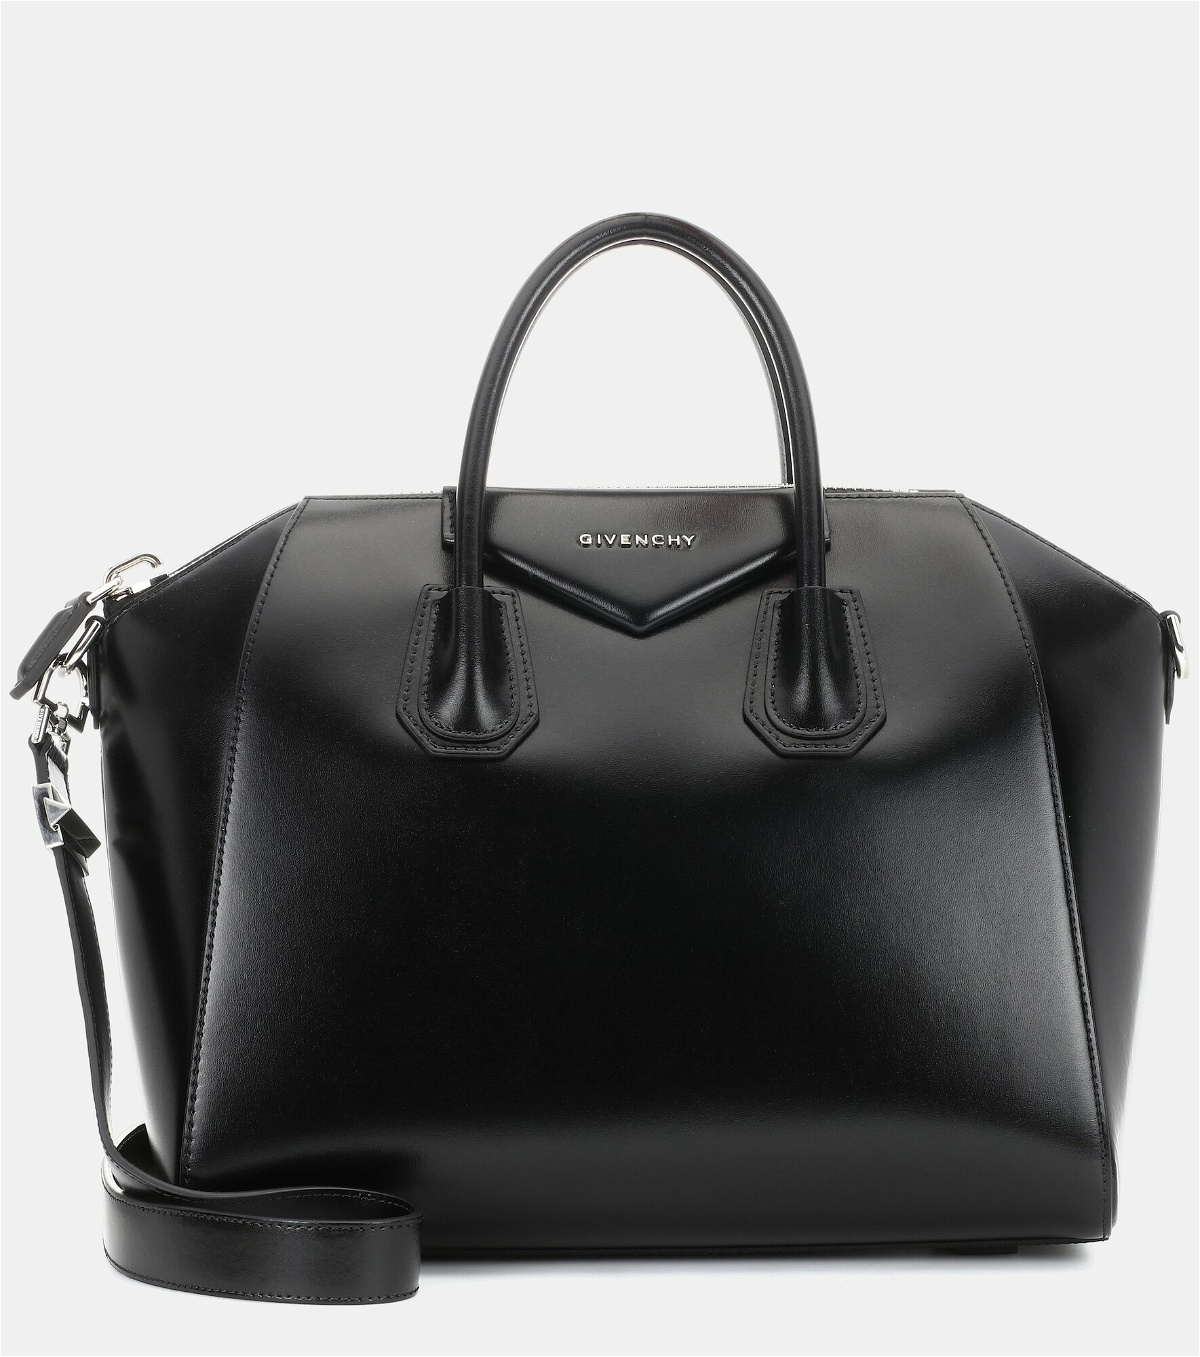 Givenchy - Antigona Medium leather tote Givenchy